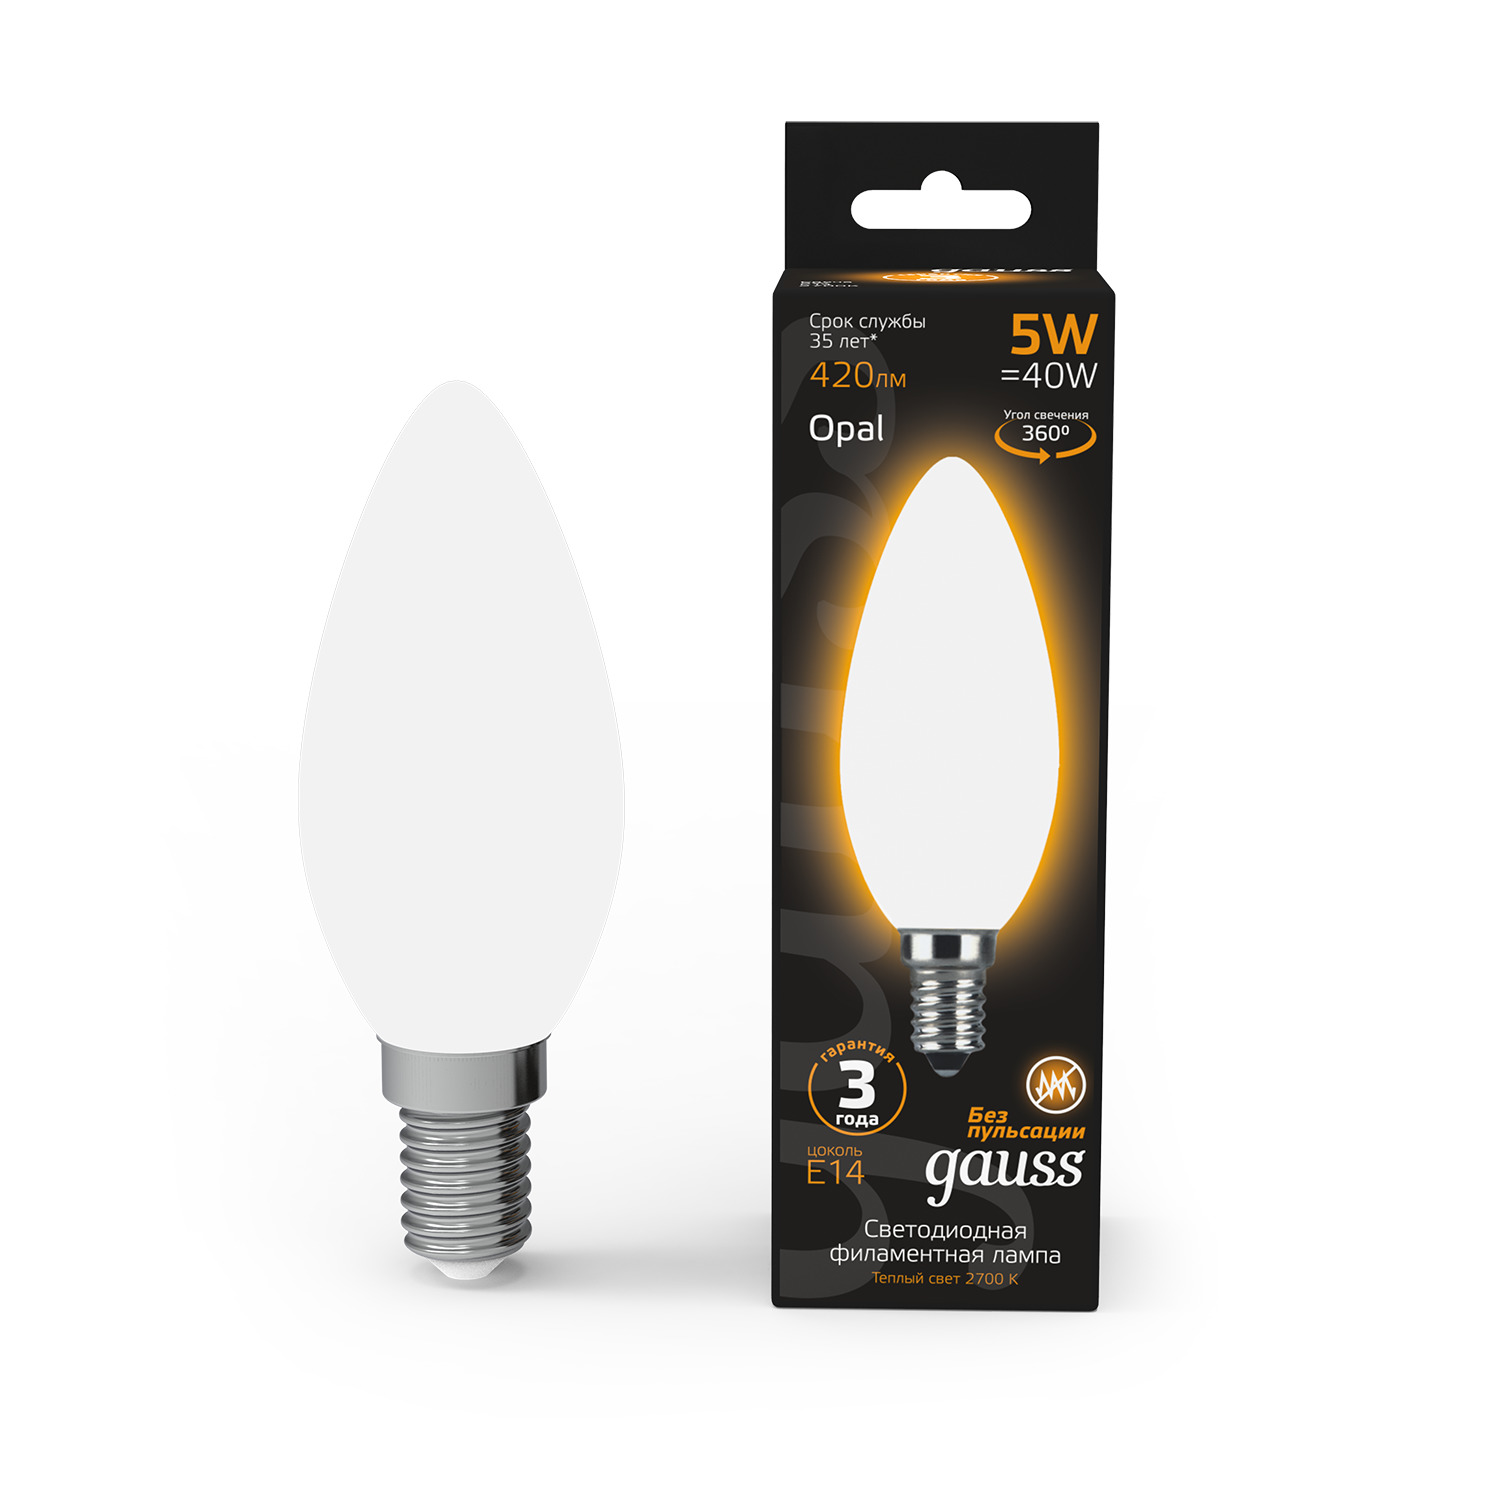 Лампа Gauss LED Filament Свеча OPAL E14 5W 420lm 2700К 1/10/50 светодиодная лампа gauss свеча 5w 420lm 2700k e14 103801105